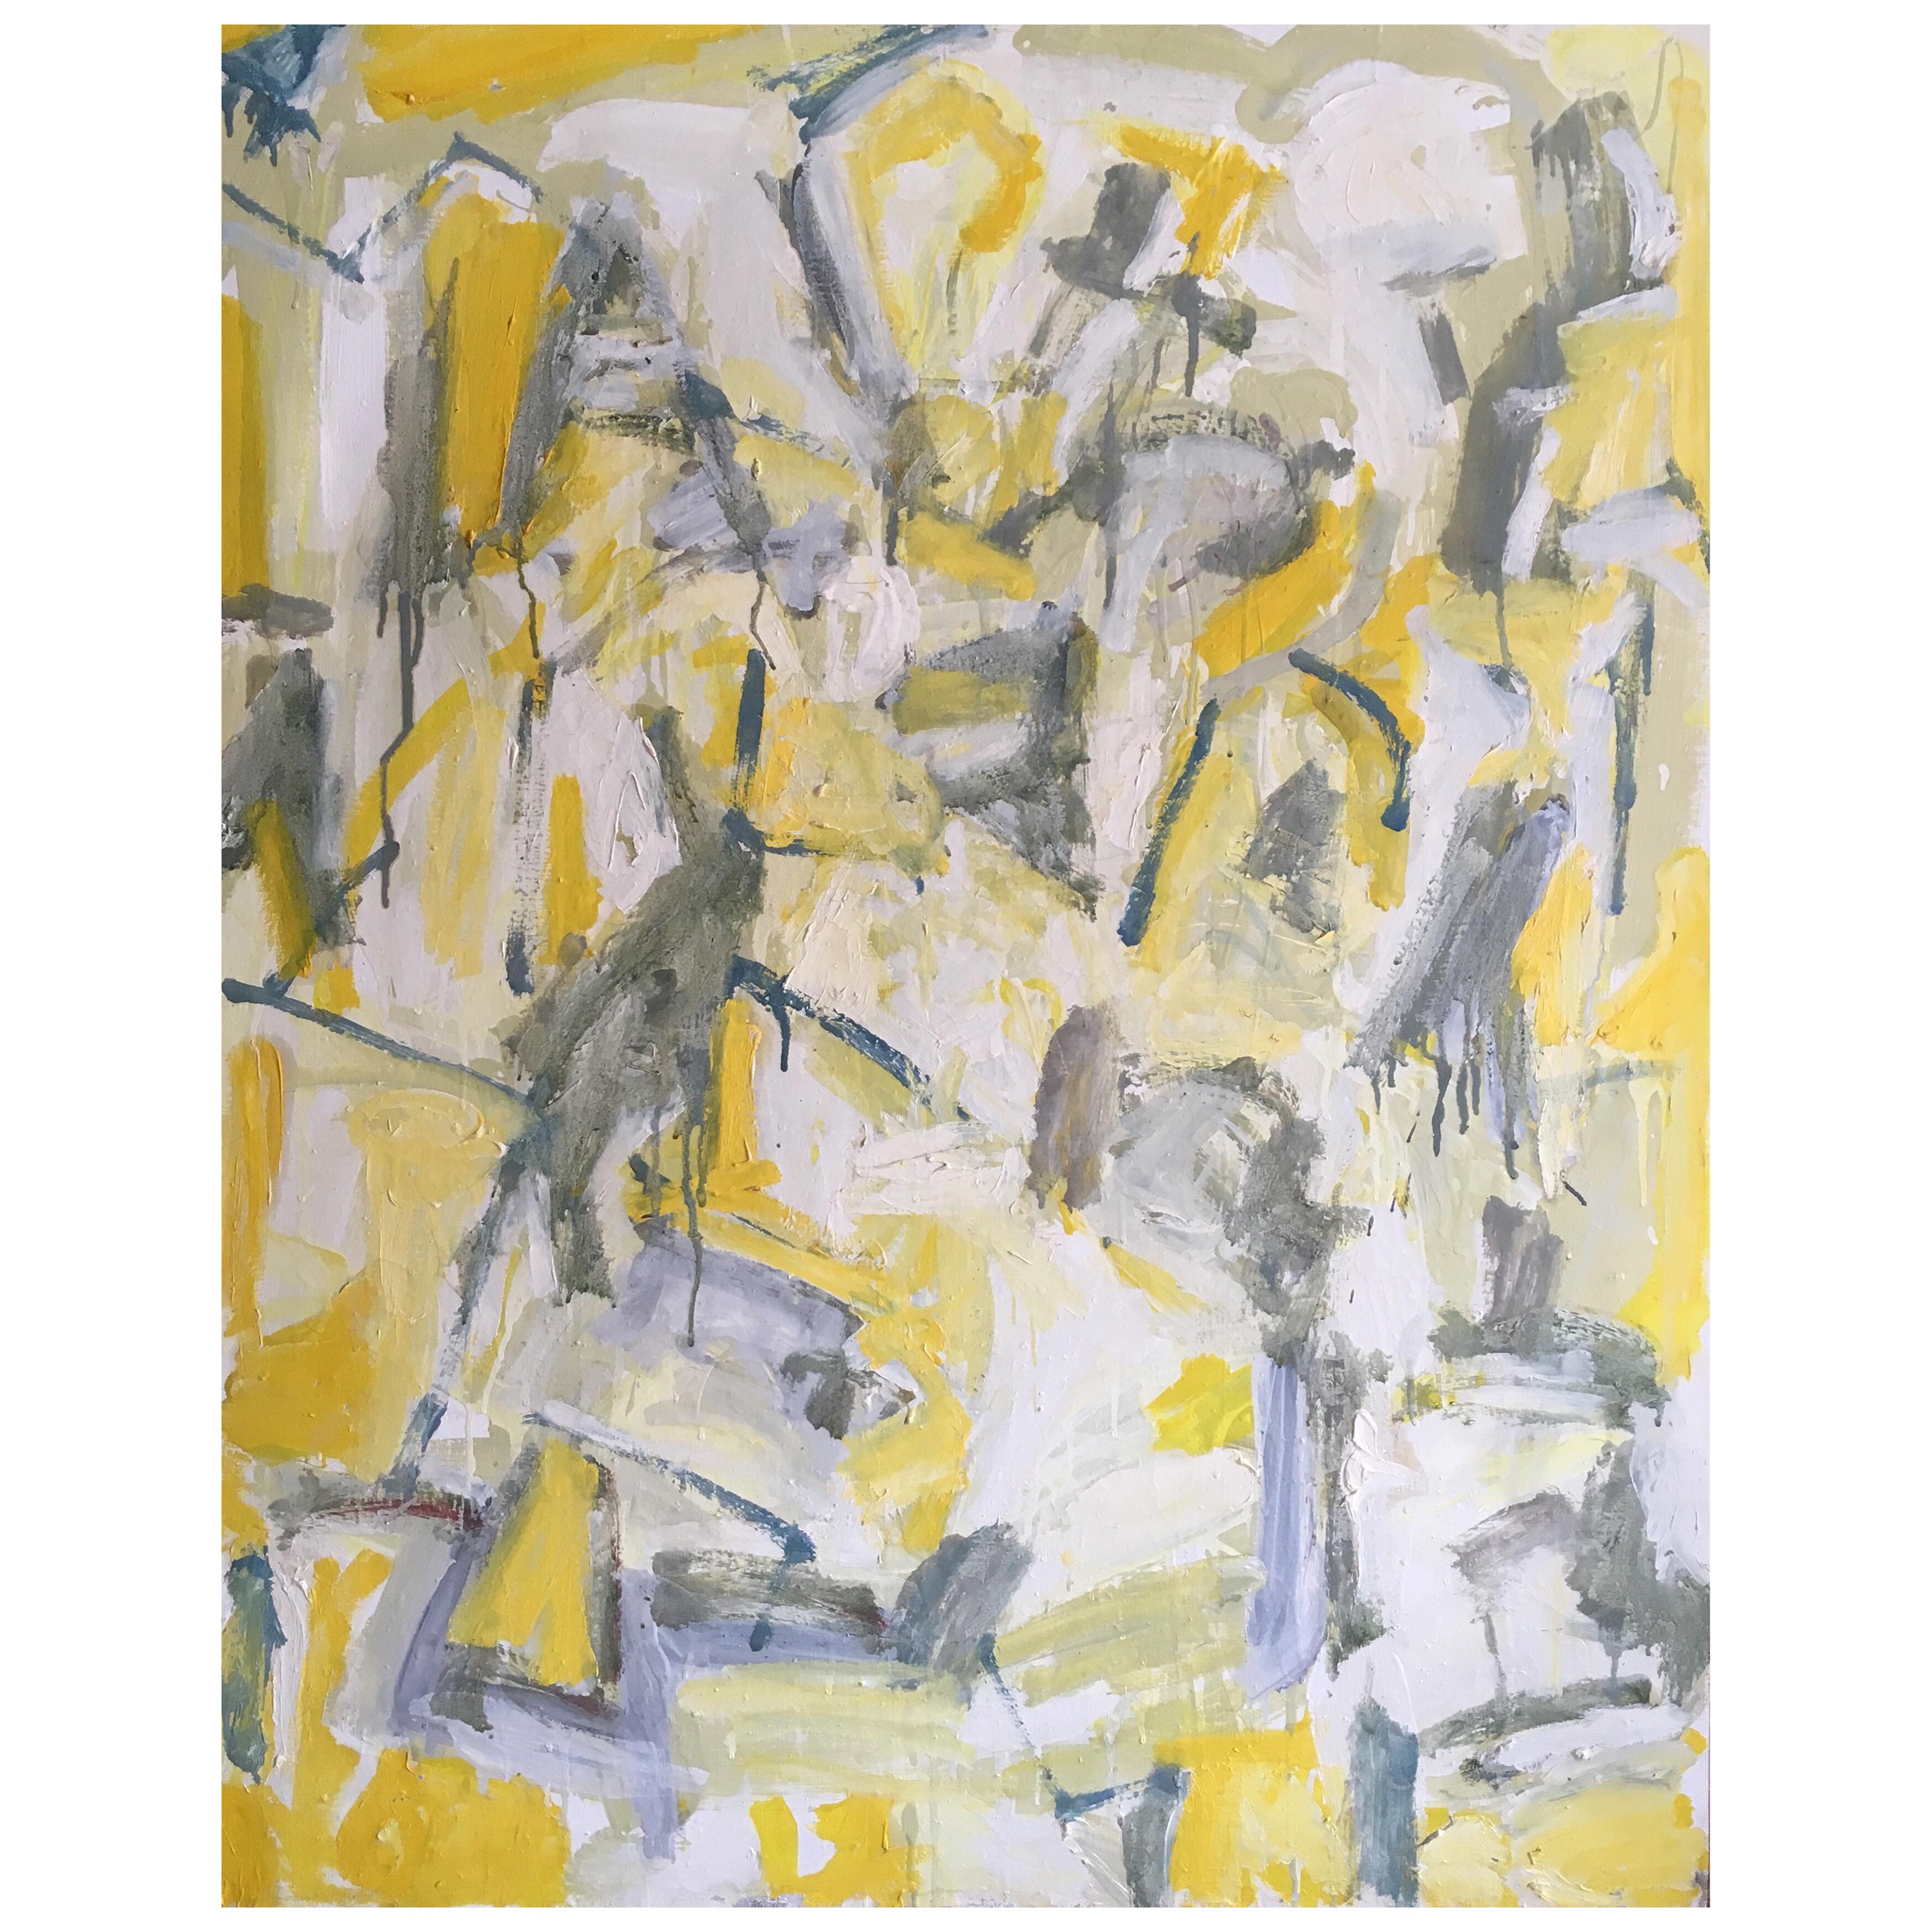 Abstraktes, großes Ölgemälde auf Leinwand, kubistisches expressionistisches Werk in Gelb und Grau